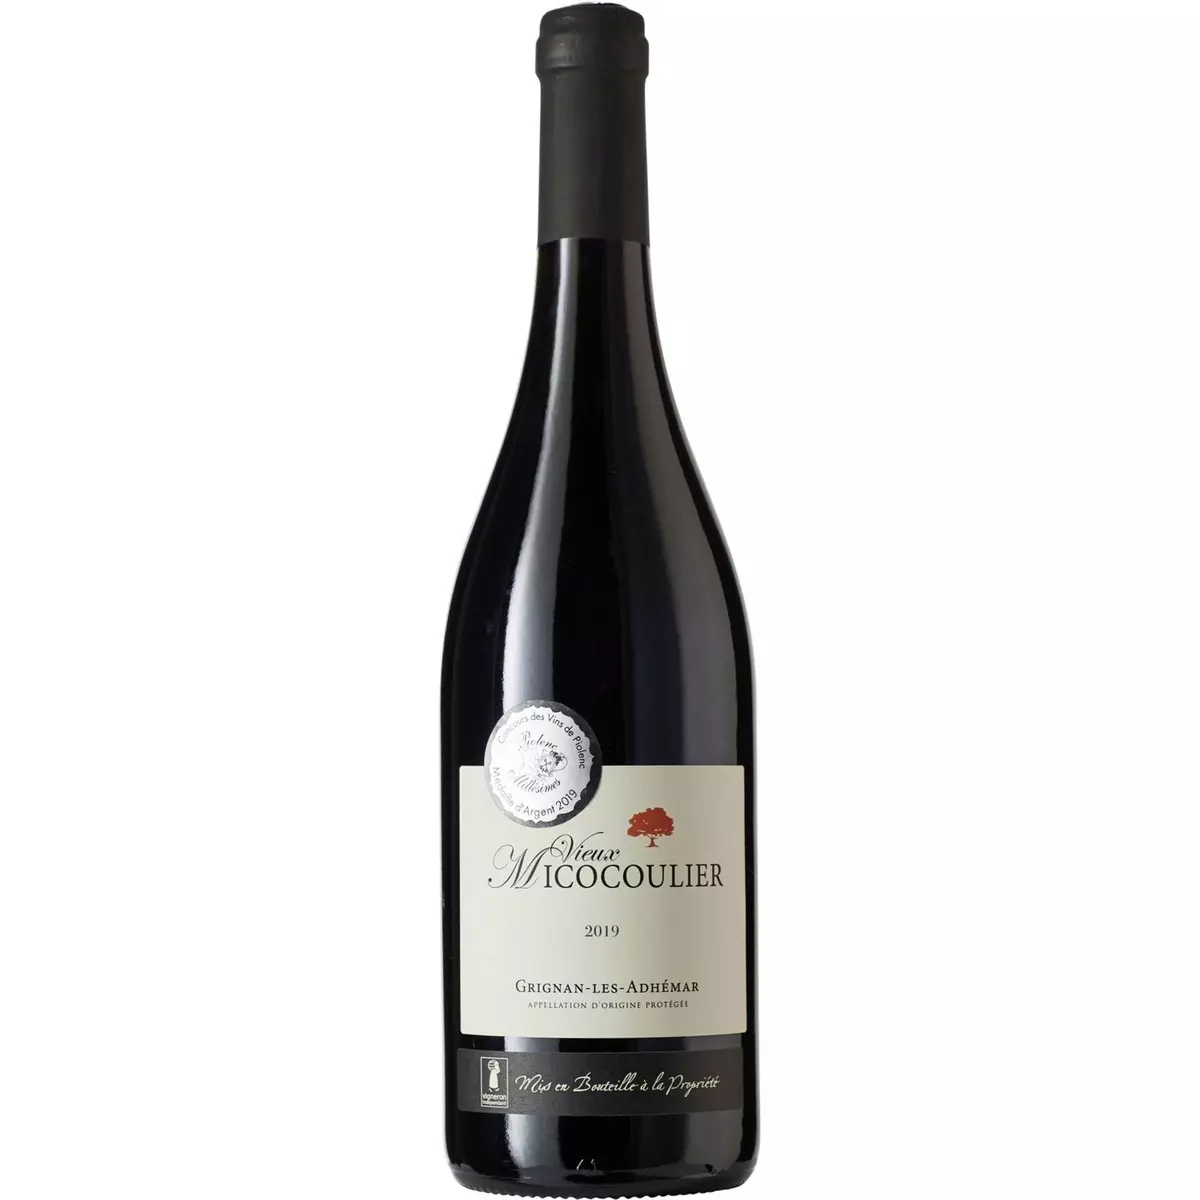 Vin rouge AOP Grignan-les-Adhémar vieux Micocoulier 2019 75cl